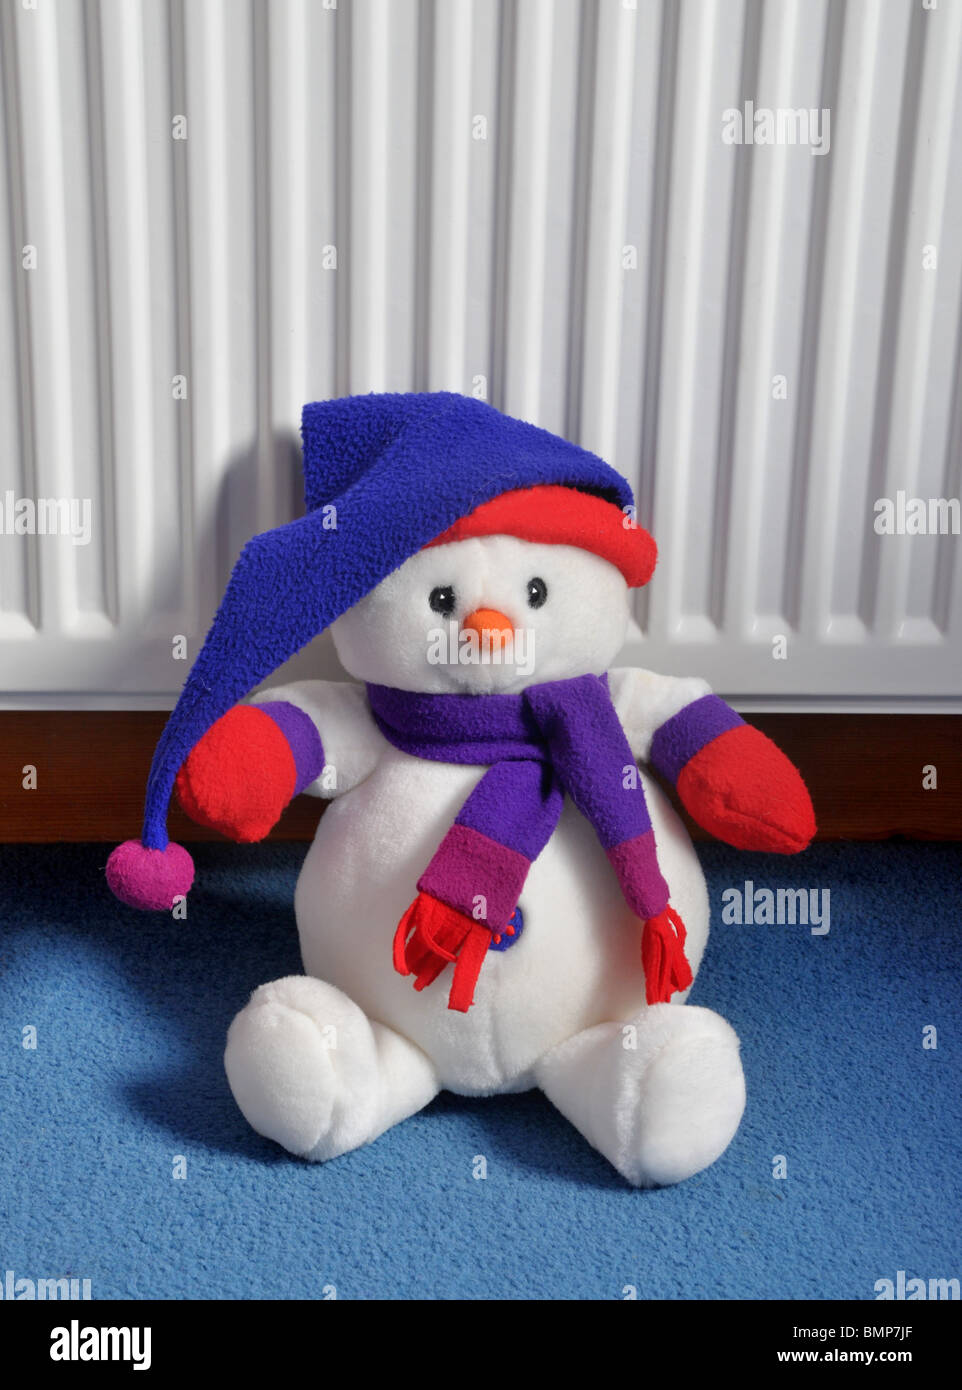 ein weiches Plüschtier Schneemann mit einem Hut und Schal sitzt auf dem Teppich an den Heizkörper gelehnt. Stockfoto